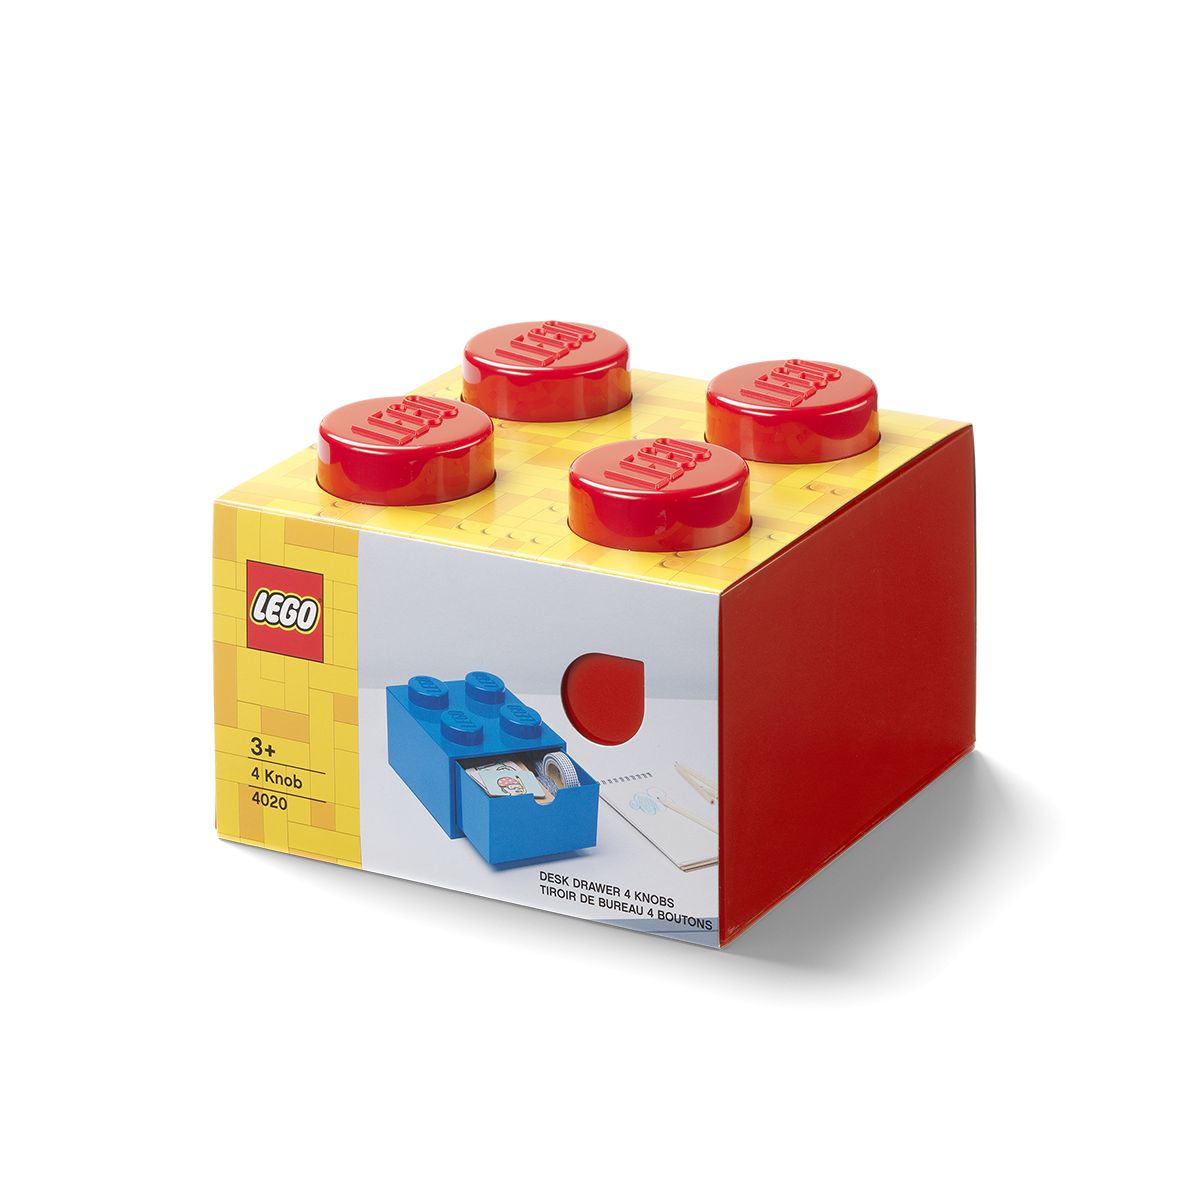 LEGO Gear 5006140 AUFBEWAHRUNGSSTEIN MIT SCHUBFACH UND 4 NOPPEN IN ROT LEGO_5006140_alt1.jpg